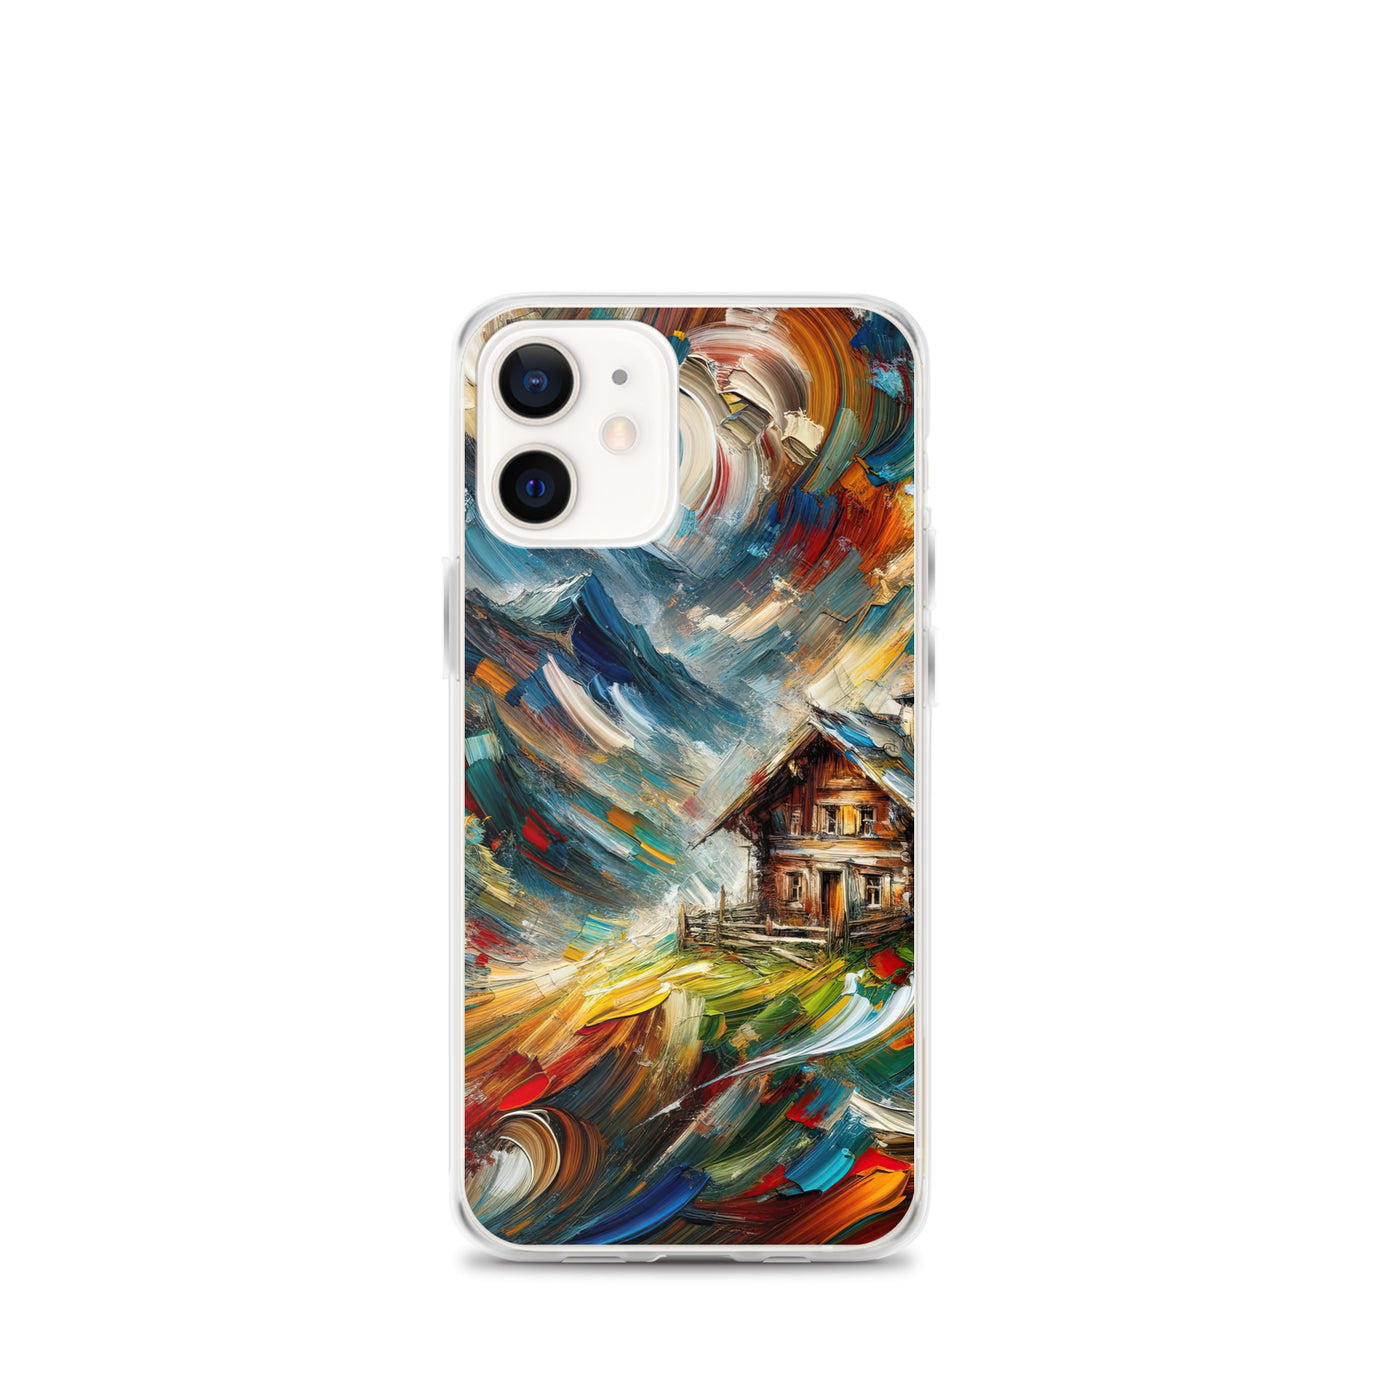 Expressionistisches Farbchaos der Alpen und Schönheit der Berge - Abstrakt - iPhone Schutzhülle (durchsichtig) berge xxx yyy zzz iPhone 12 mini